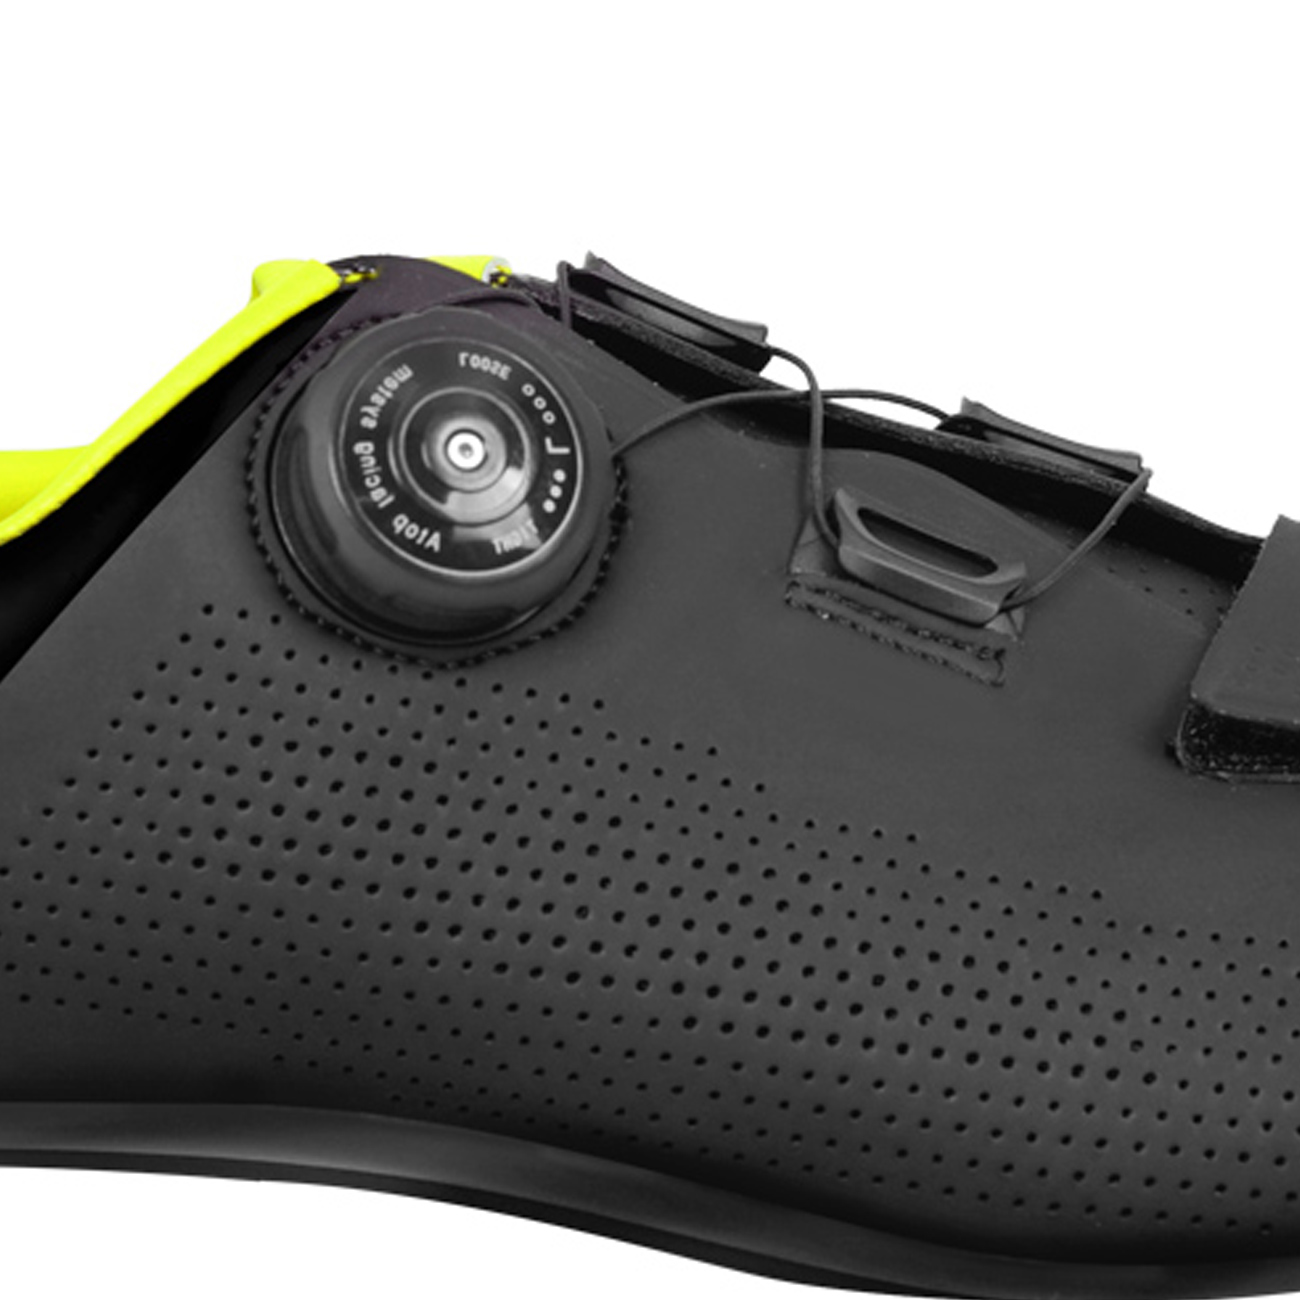 FLR Kerékpáros Cipő - F11 - Fekete/sárga